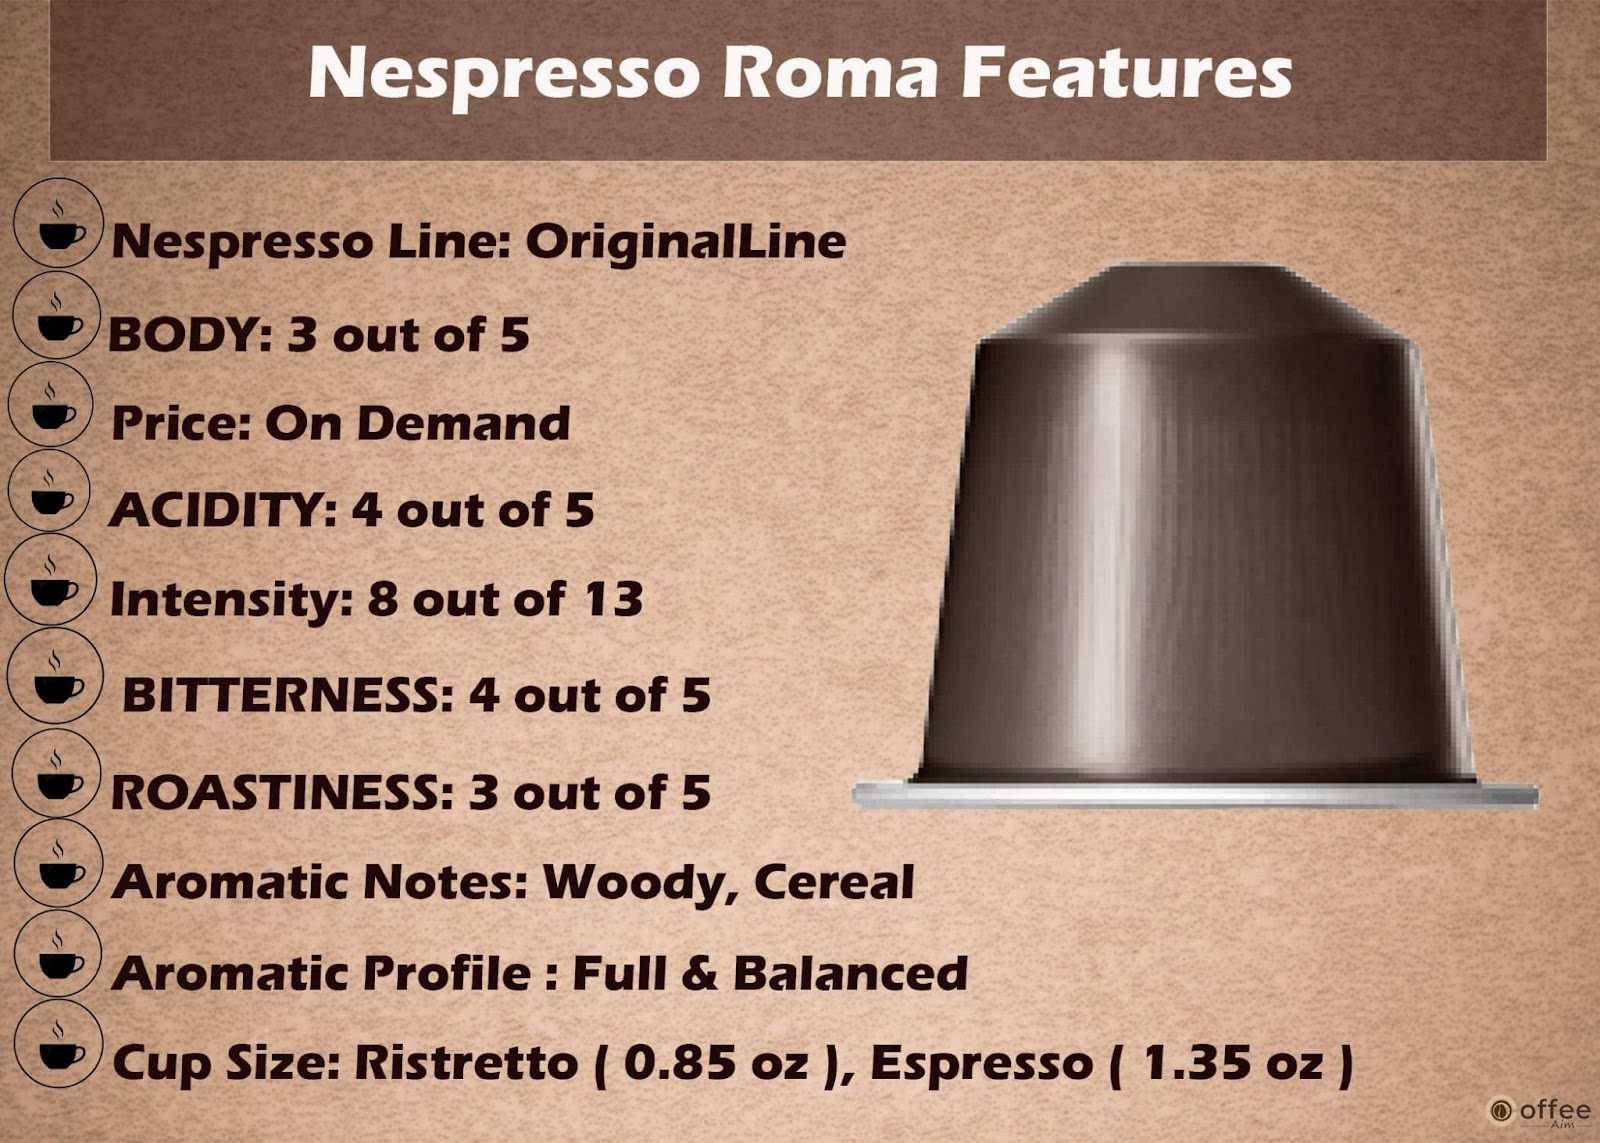 Features Chart of Nespresso Roma OriginalLine Capsule.